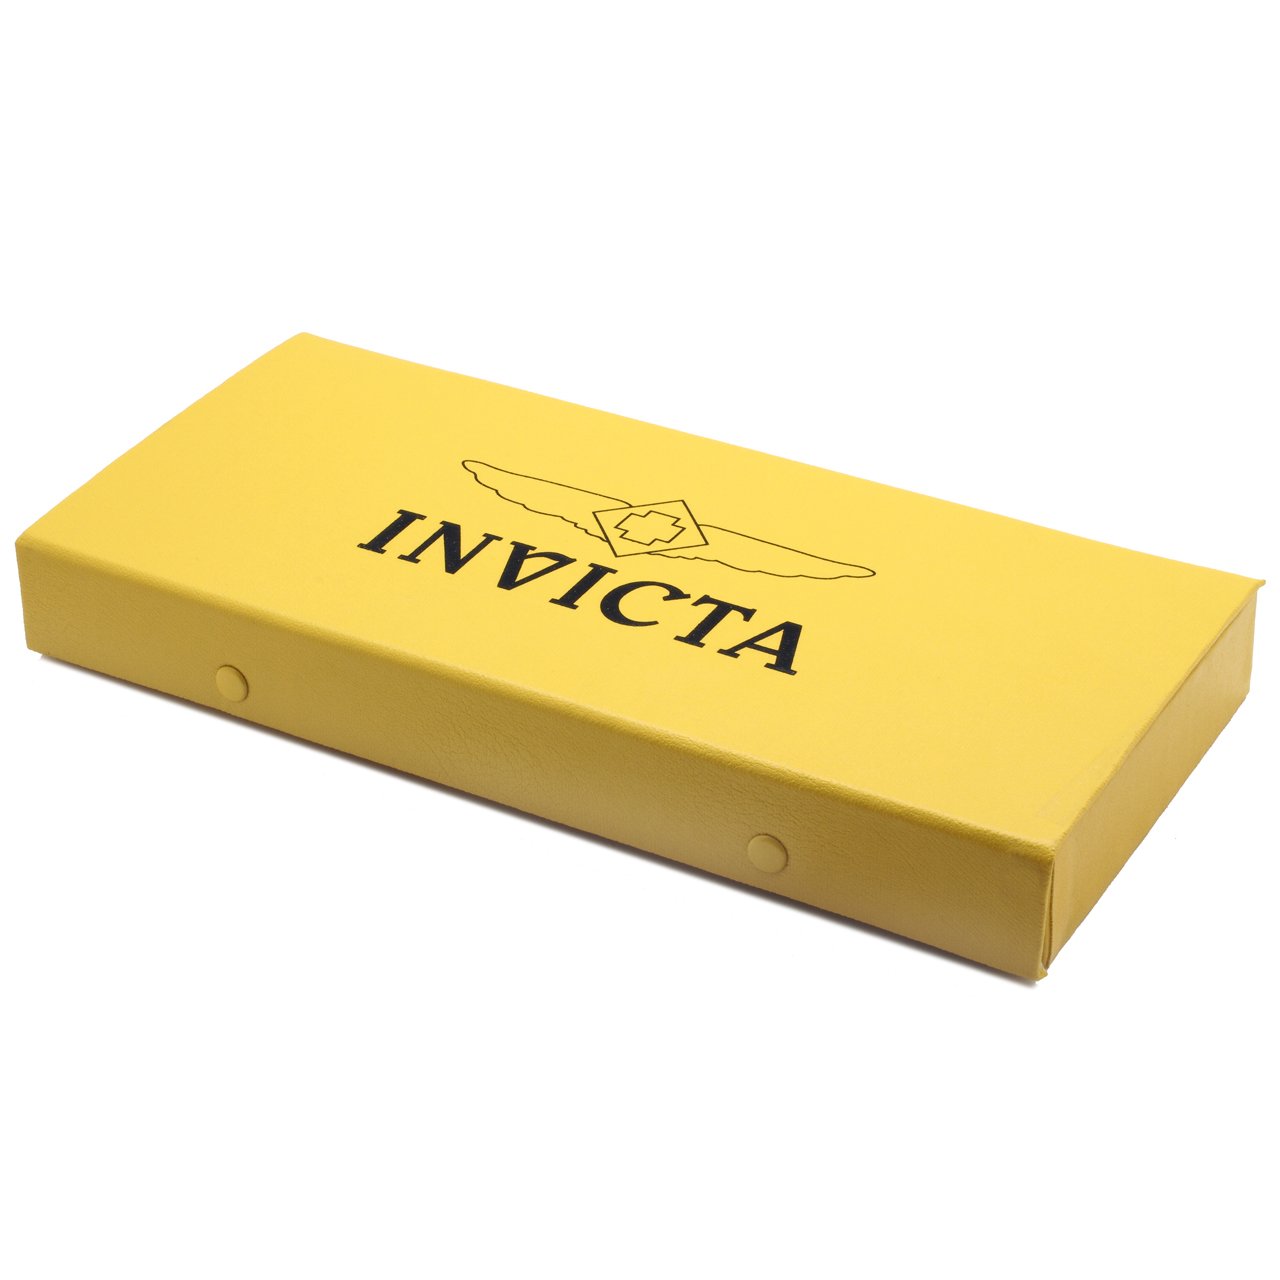 Invicta ITK002 Multi-Function unisex-adult Watch Tool Kit Set